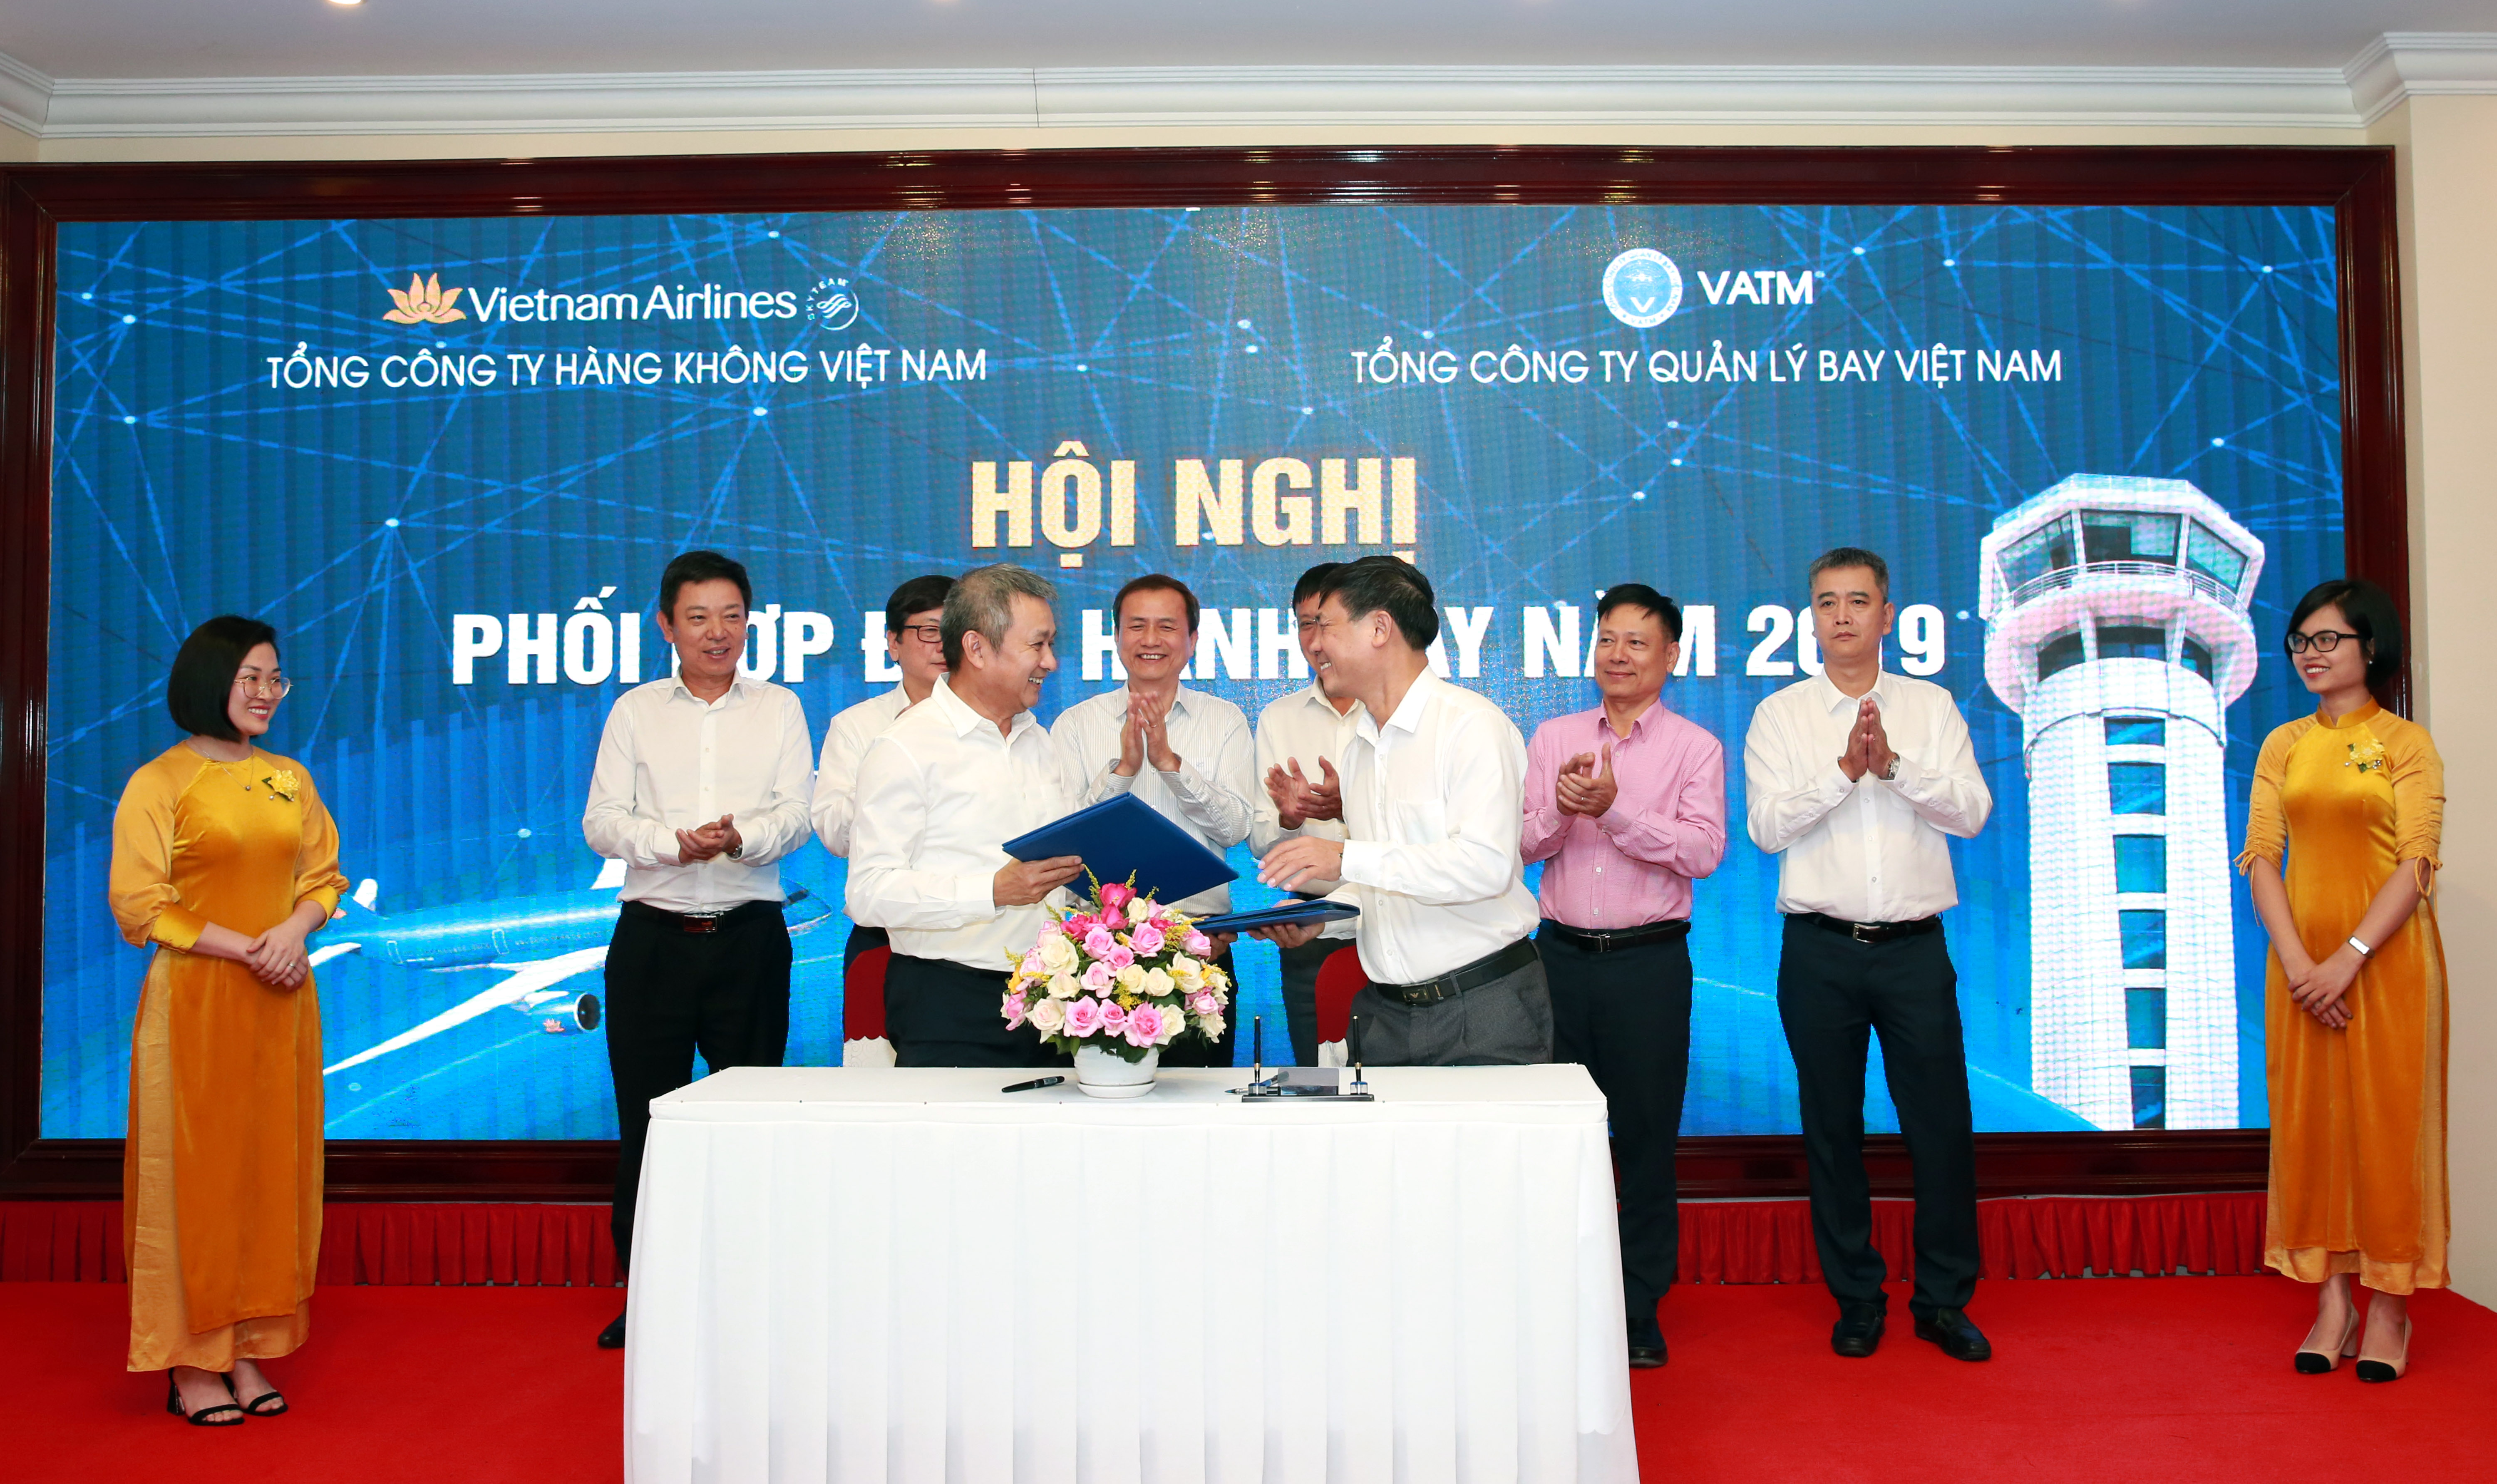 Hội nghị phối hợp điều hành bay năm 2019 giữa VATM và Vietnam Airlines